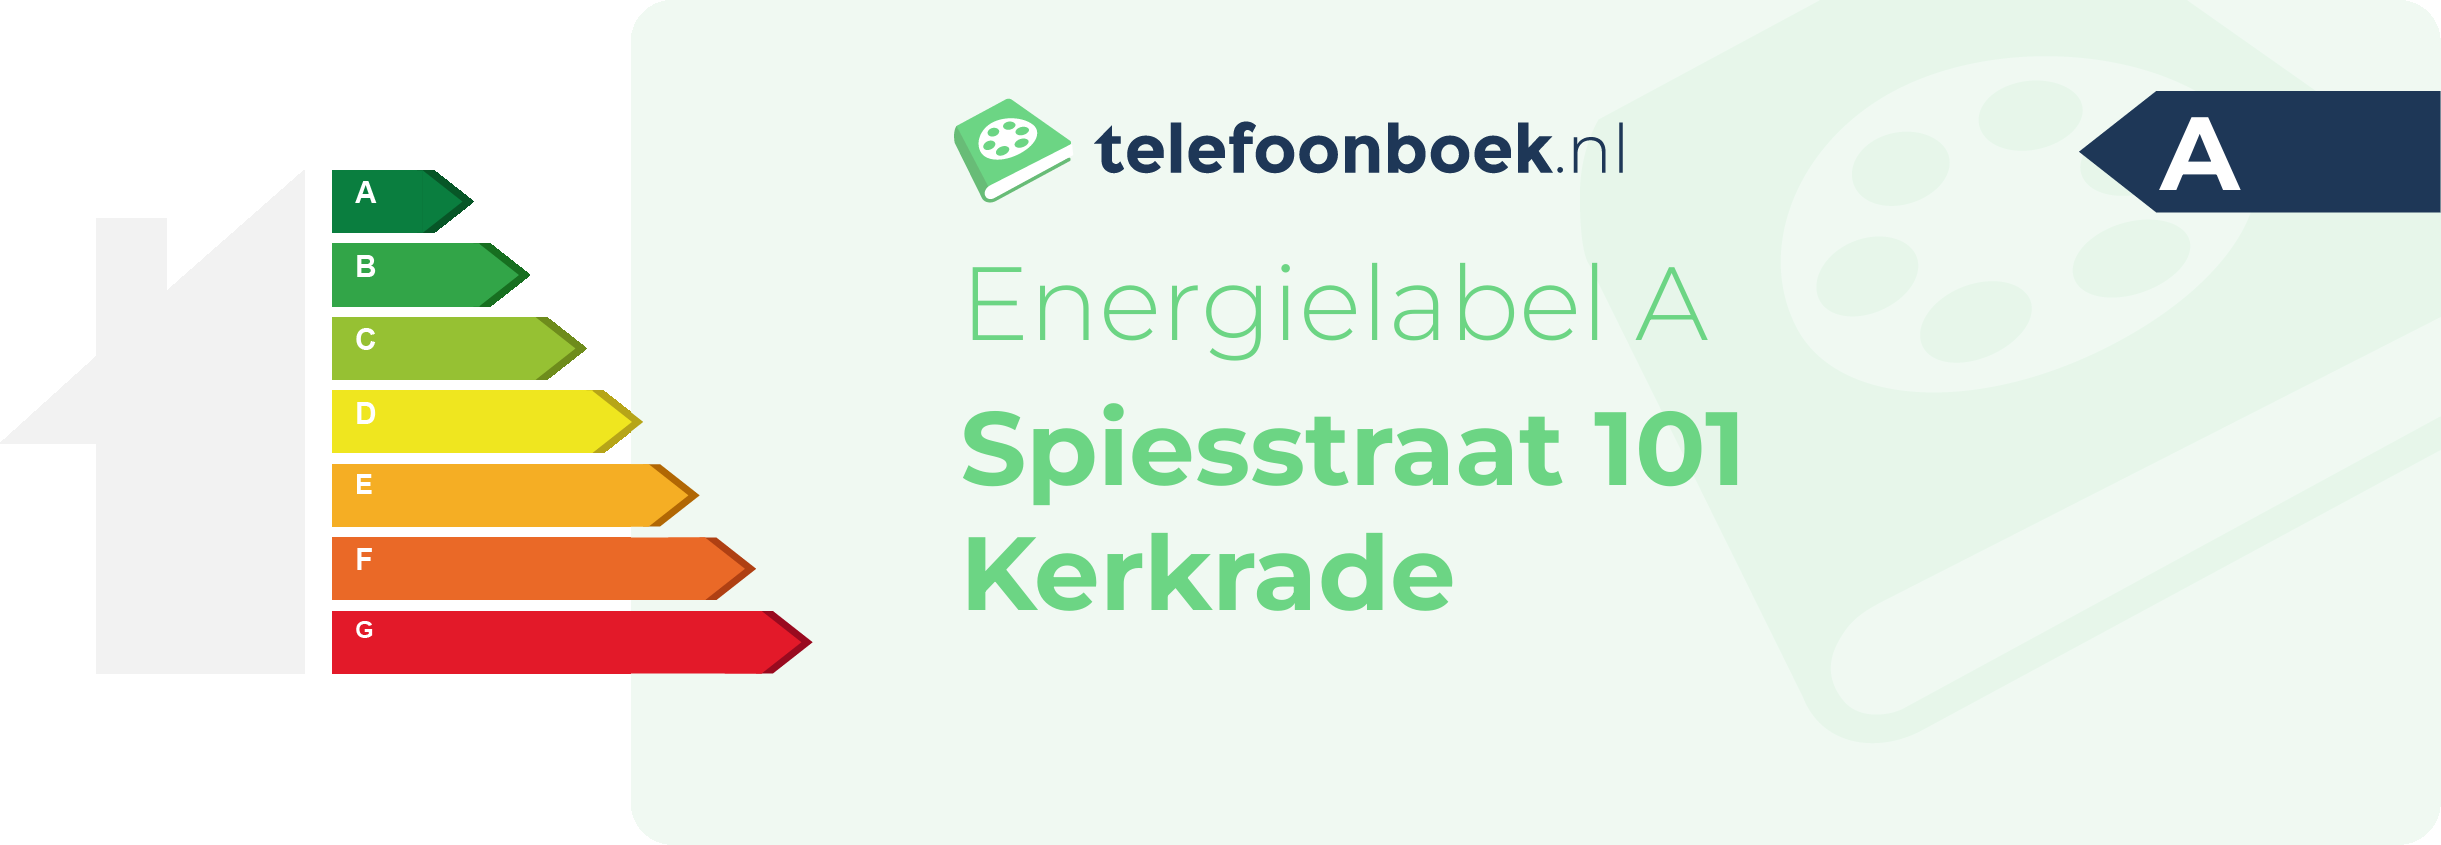 Energielabel Spiesstraat 101 Kerkrade